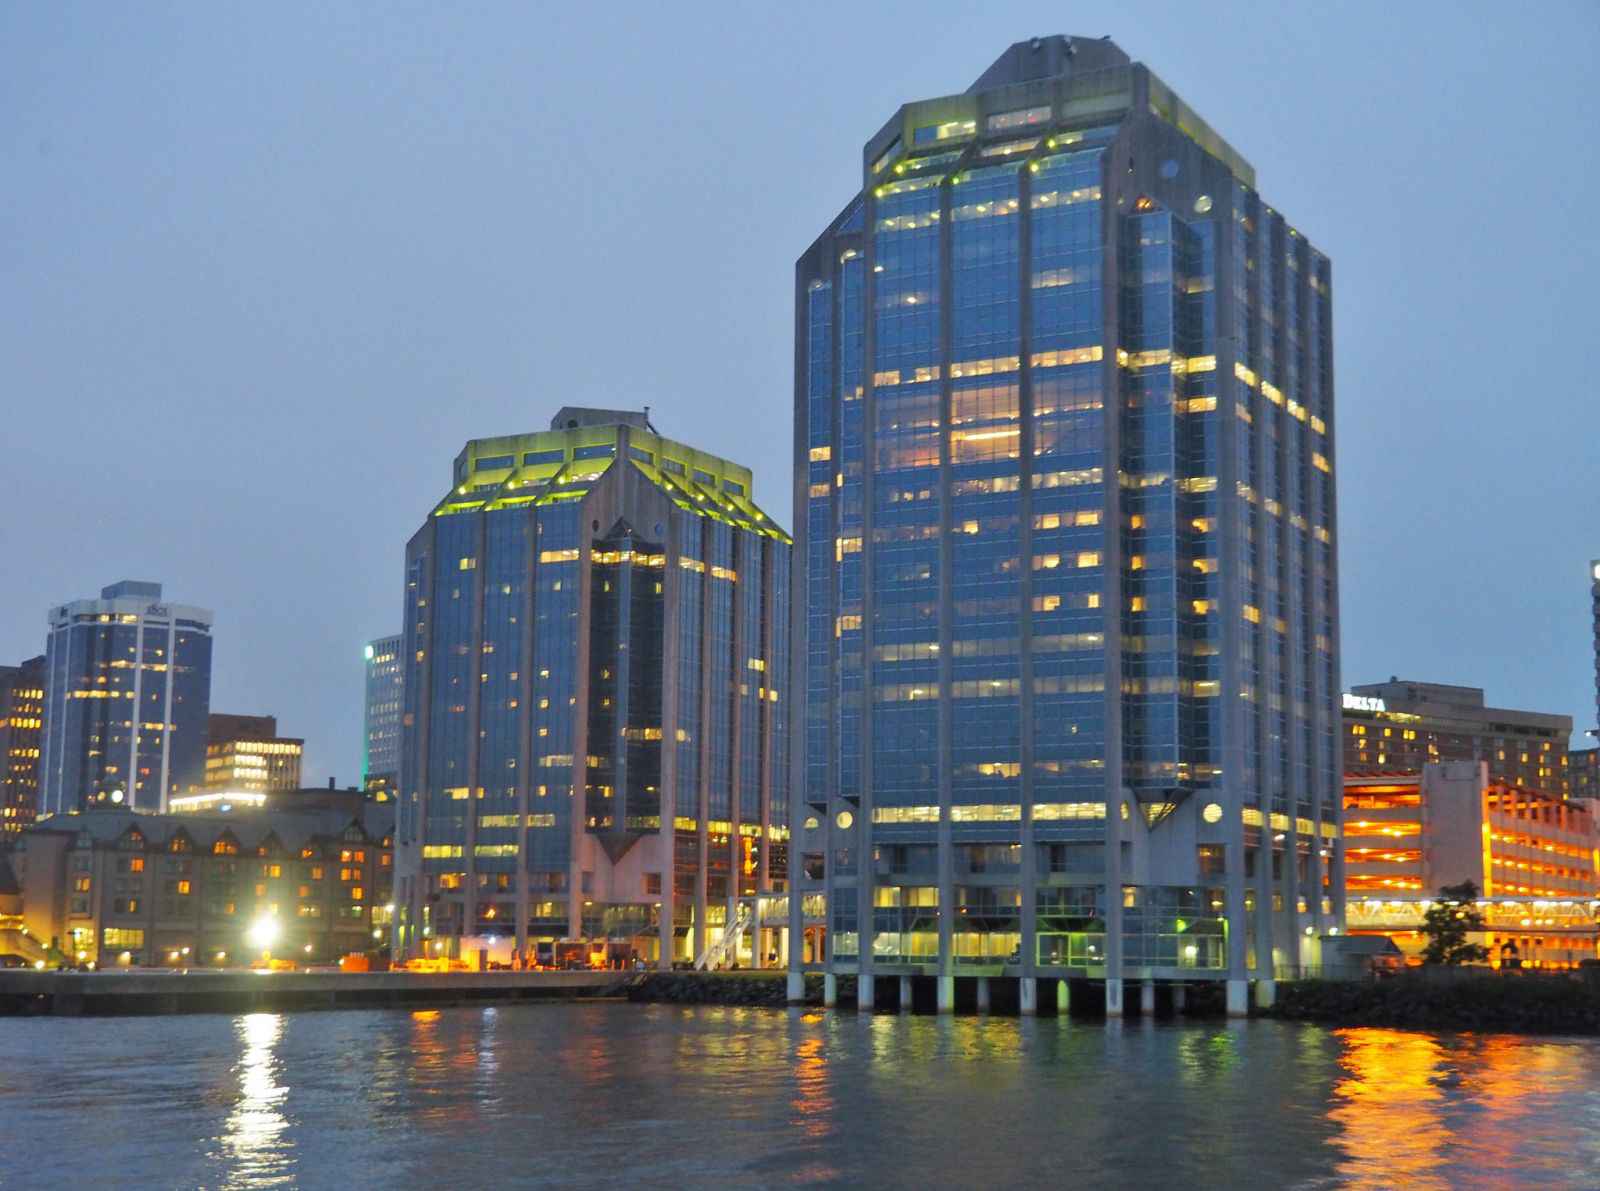 Halifax là một trung tâm kinh tế lớn với số lượng lớn các tổ chức chính phủ và các doanh nghiệp tư nhân